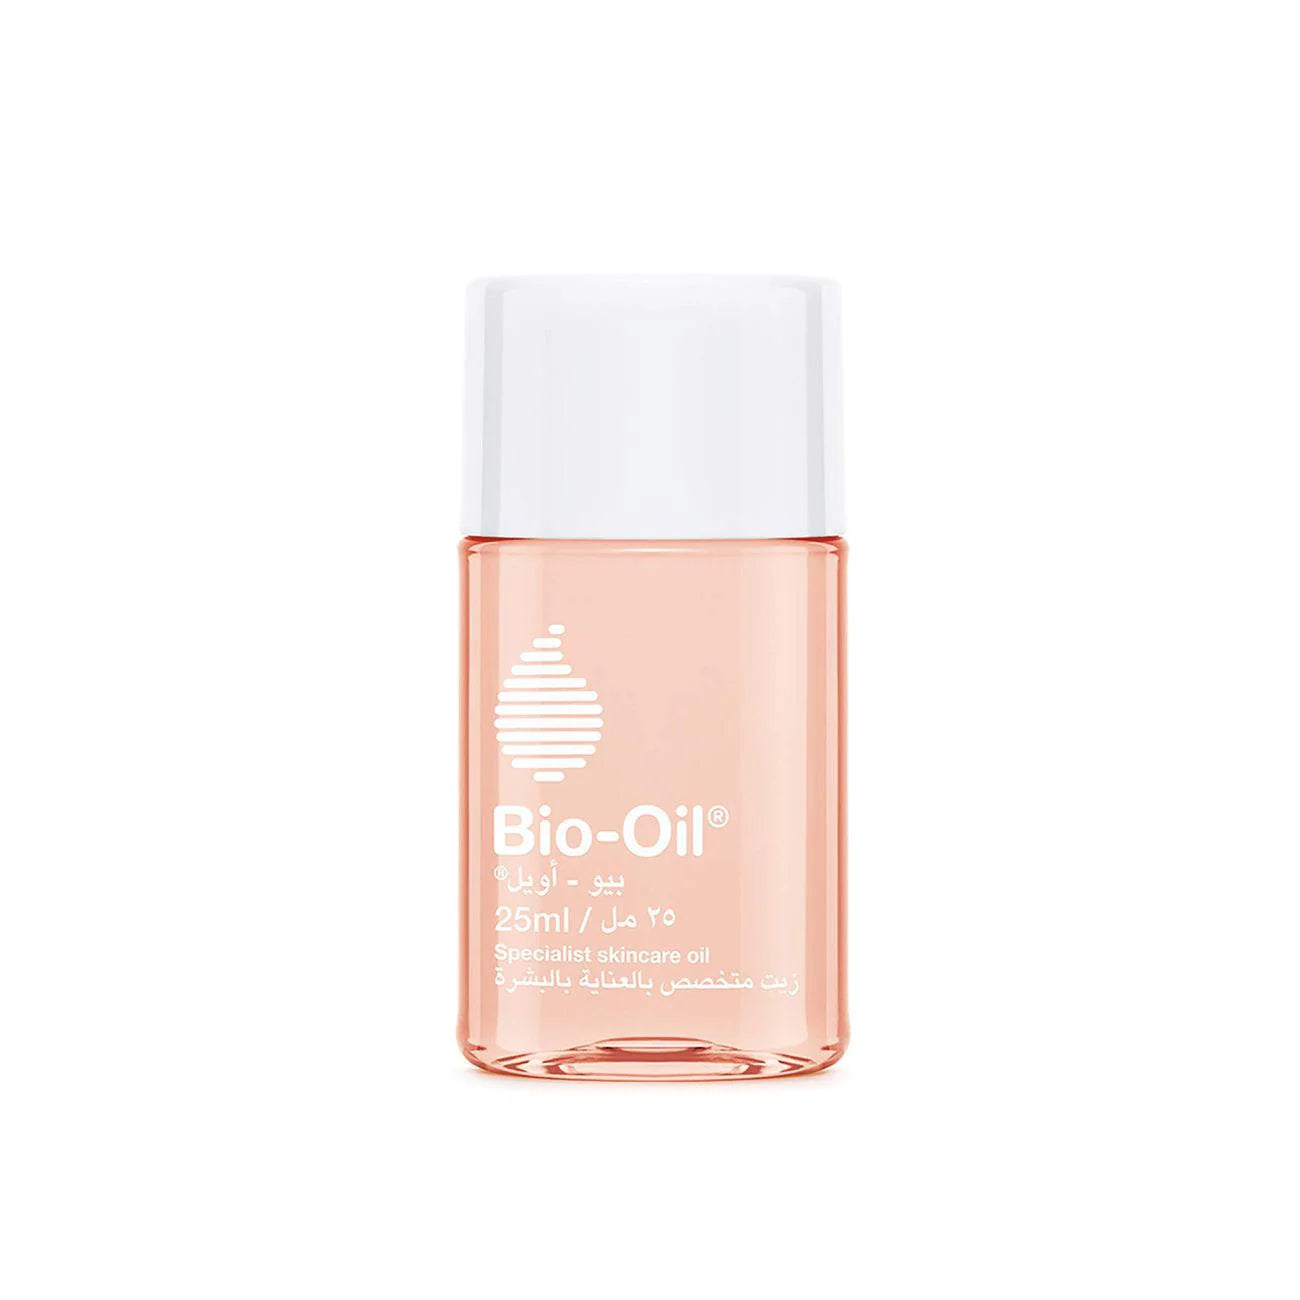 BIO-OIL Skincare Oil